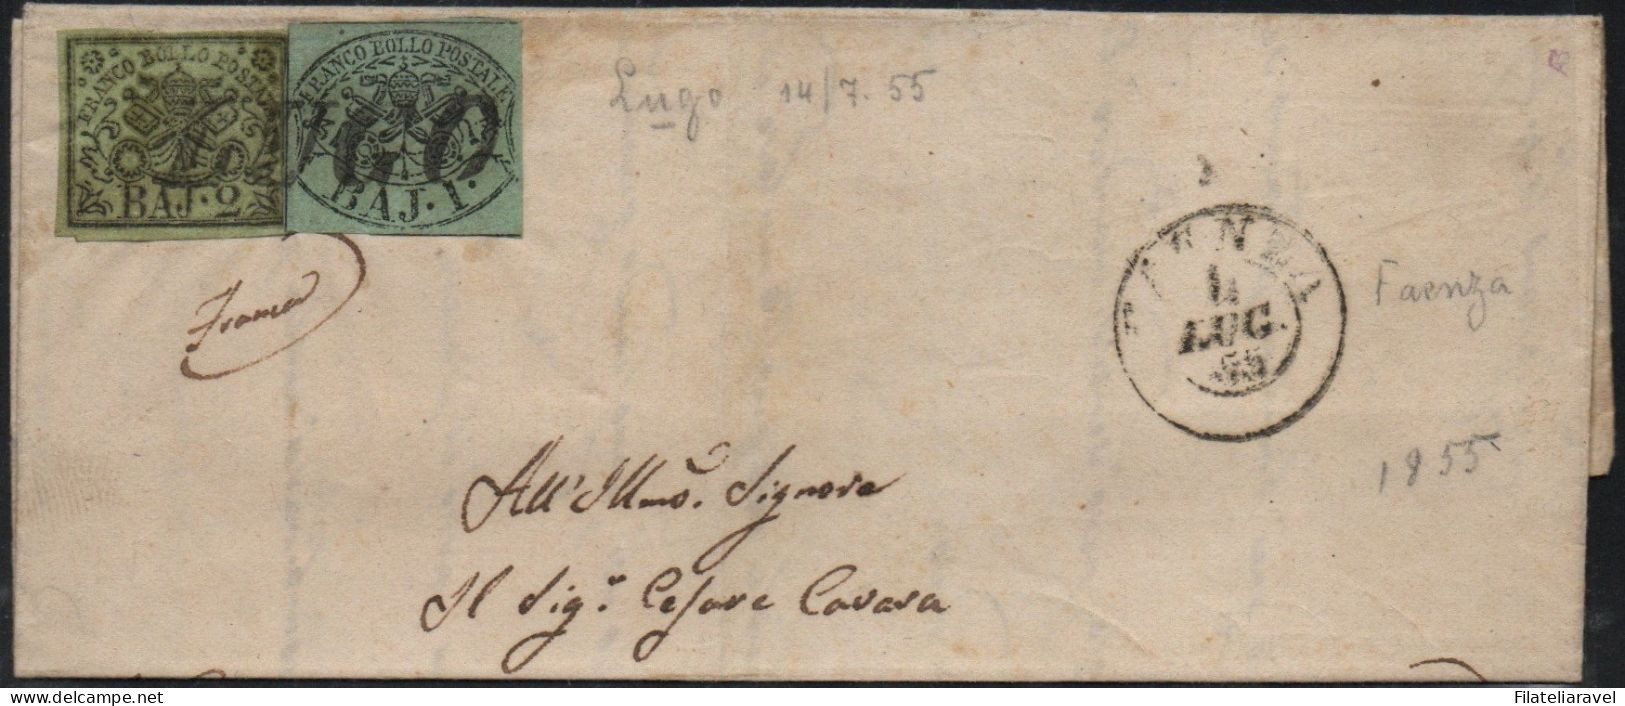 ASI -1857 - STATO PONTIFICIO - Lettera Completa Di Testo Partita Da Fulignano Il 4 Luglio 1855 E Diretta A Bologna - Etats Pontificaux